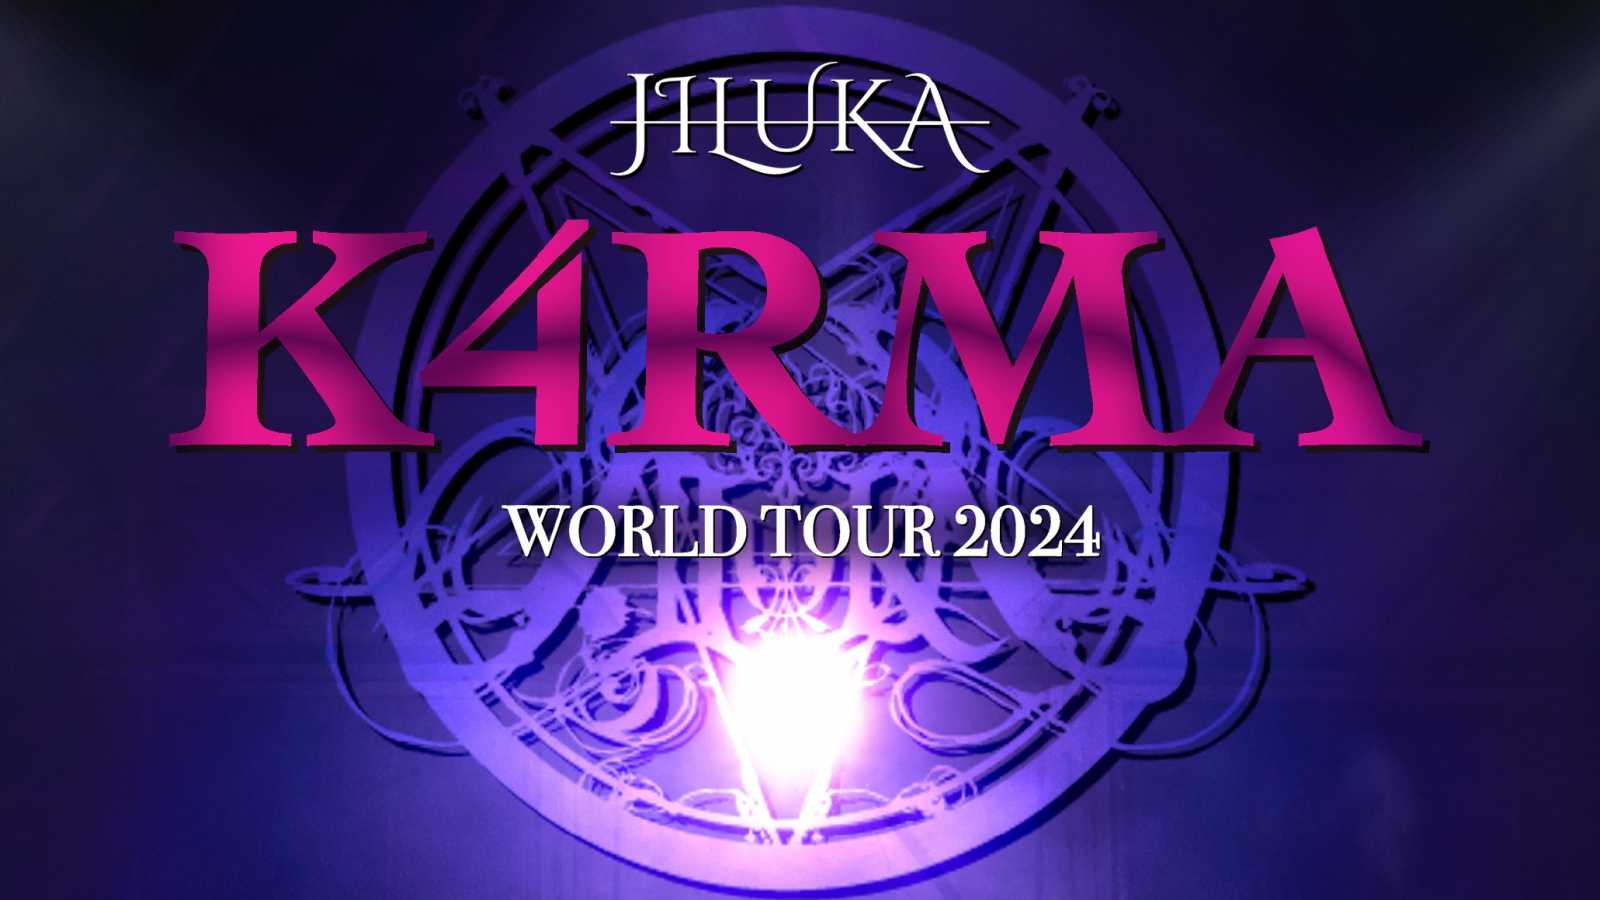 JILUKA, une tournée mondiale prévue en 2024 ! © JILUKA. All rights reserved.